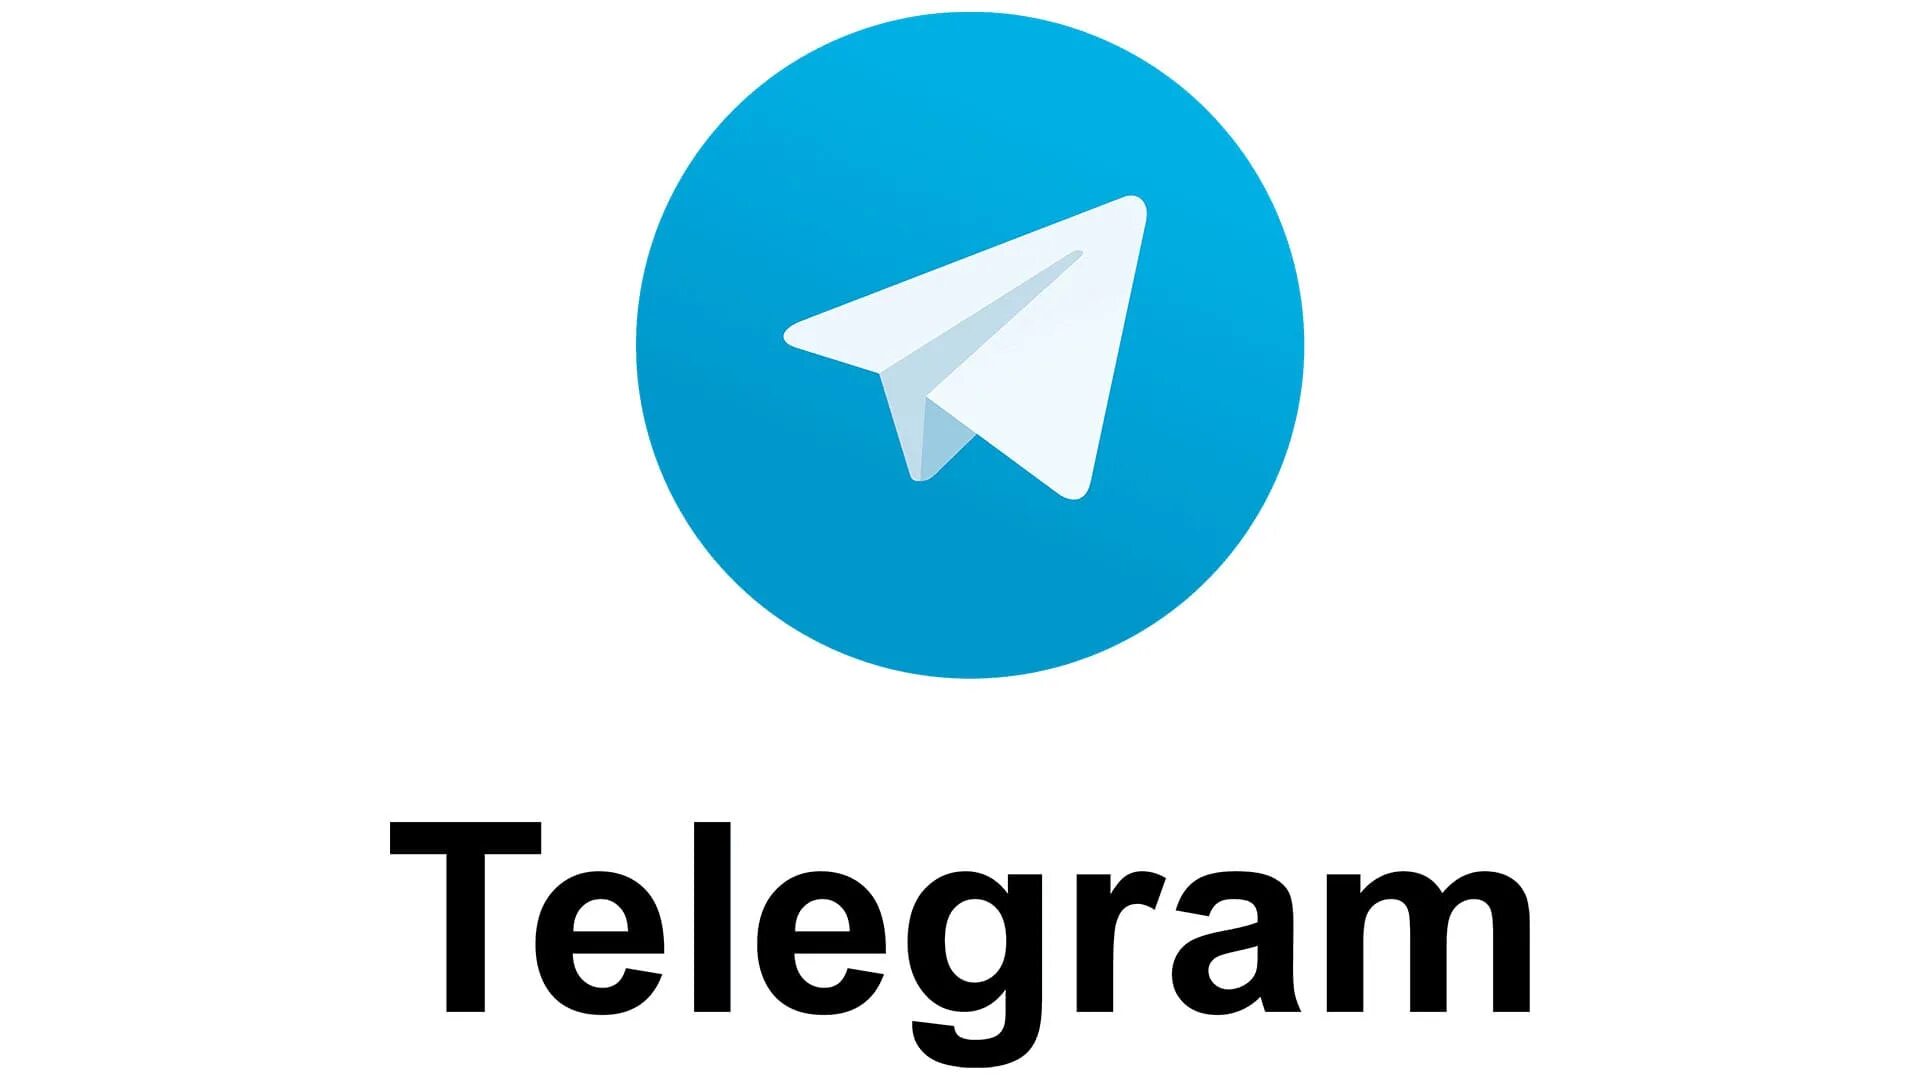 Телеграмм. Логотип телеграмм. Пиктограмма телеграмм. Прозрачный значок телеграмм. Турк телеграм